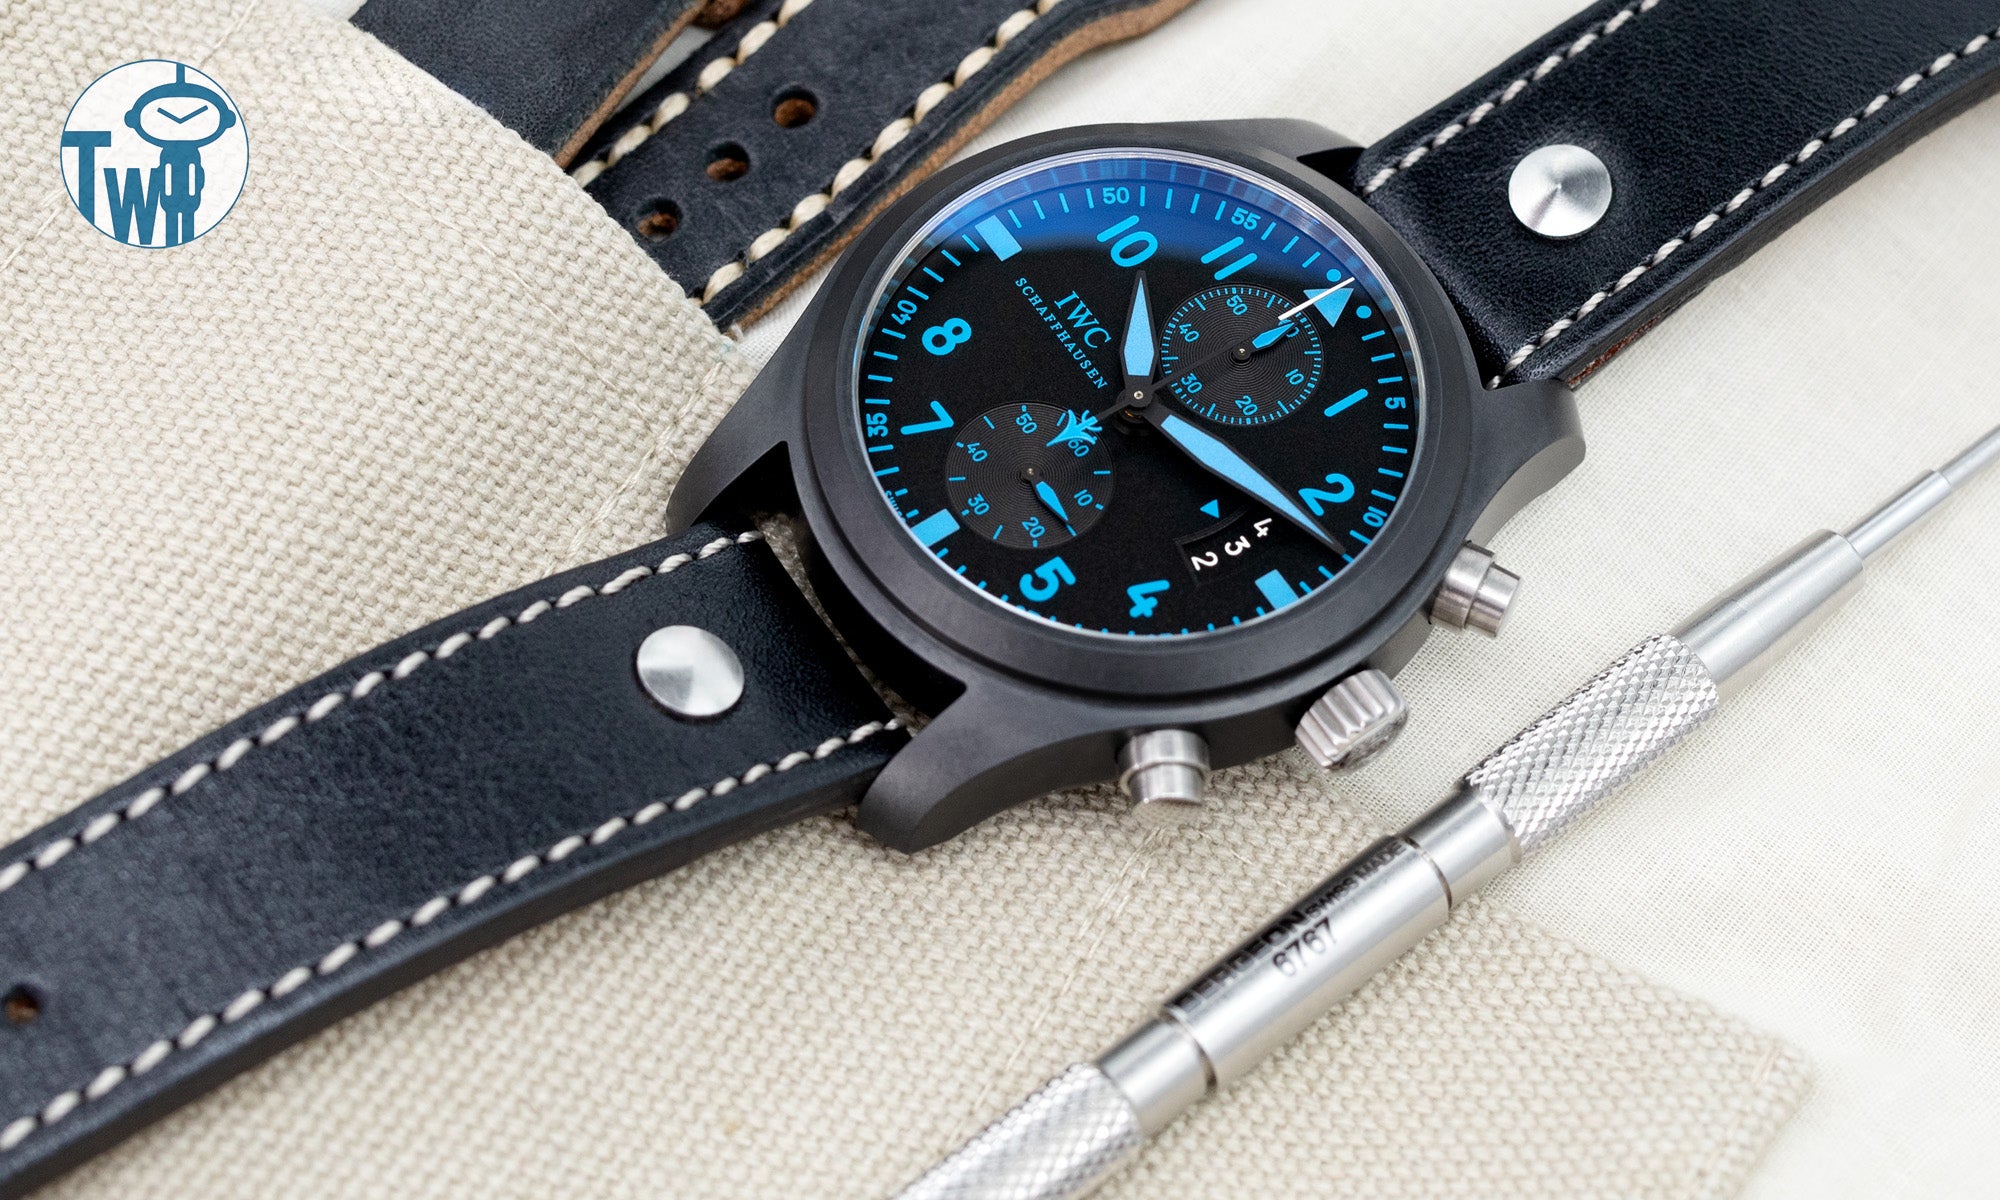 黑色飛行員風格皮革錶帶與IWC萬國錶 TOP GUN 大飛行員系列 IW388003 計時碼錶相配，由太空人腕時計TW提供